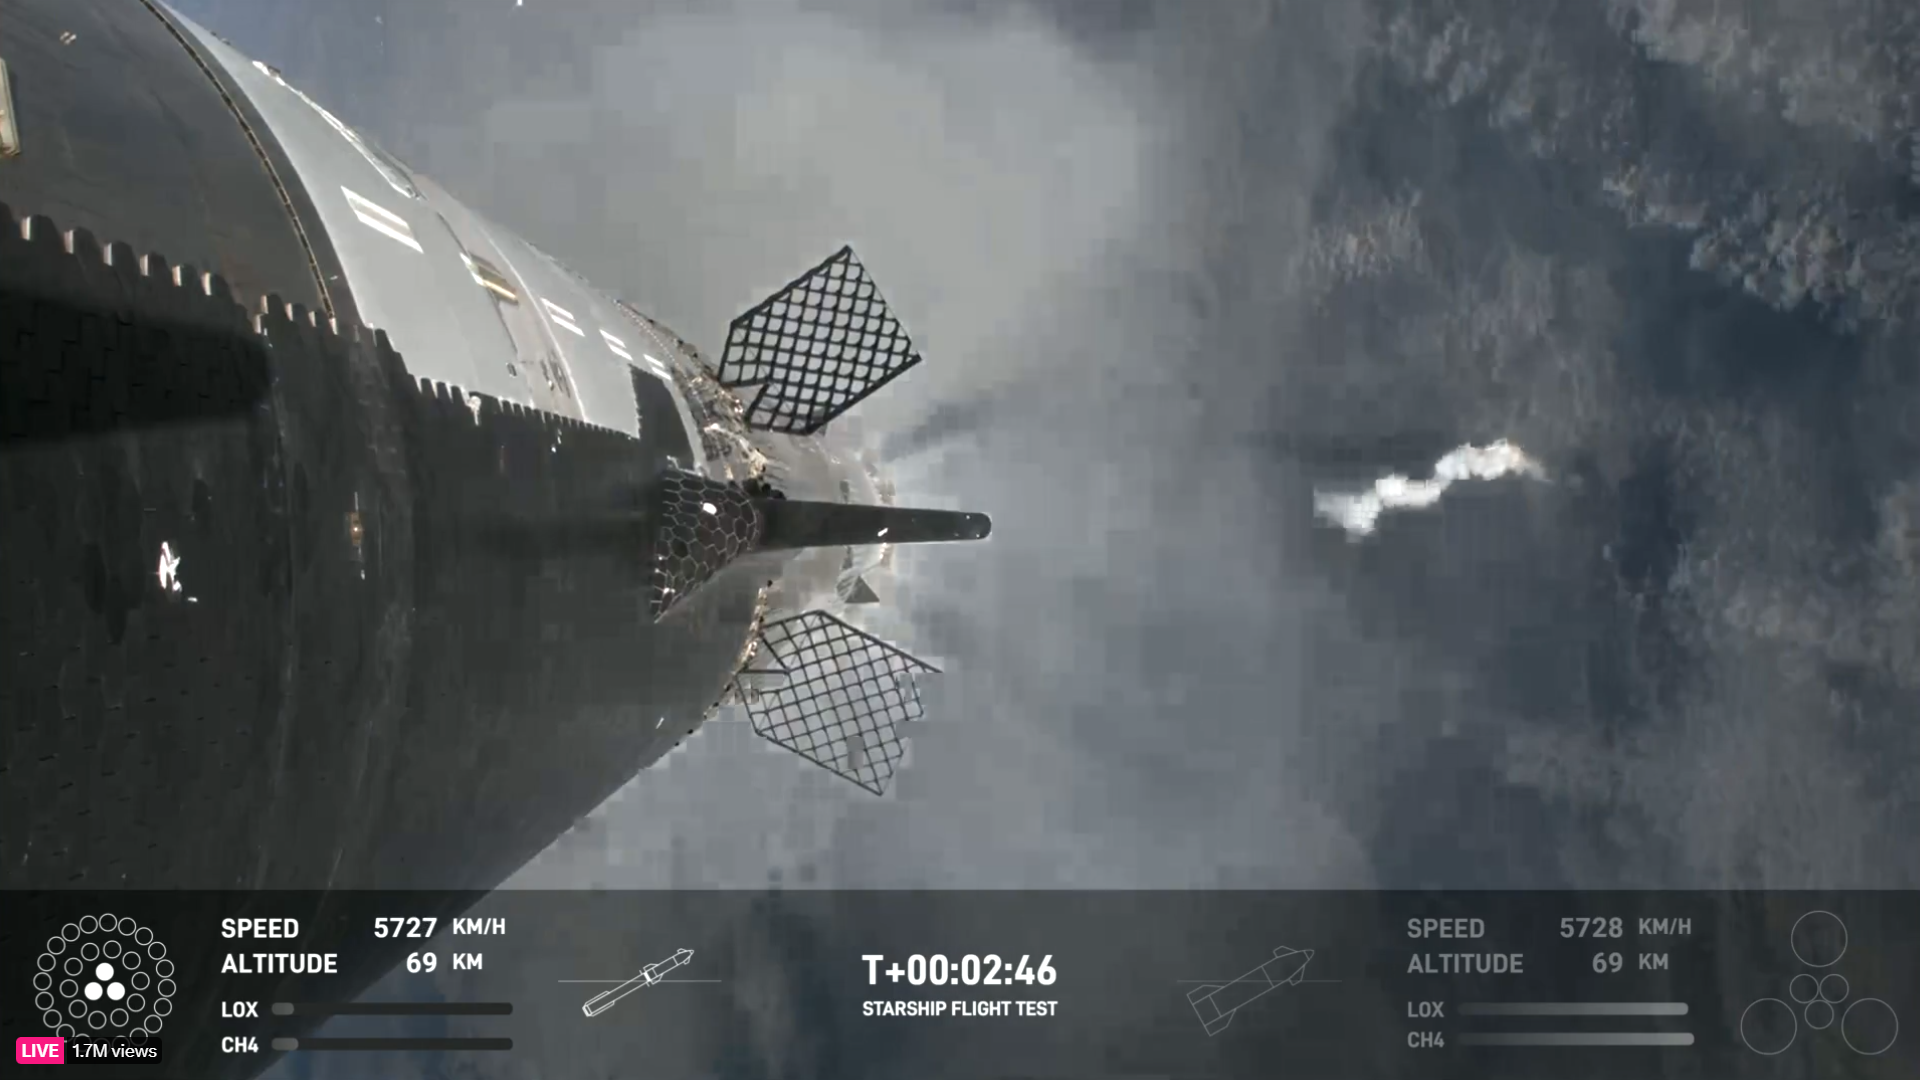 Captura de tela de uma nave espacial voando acima da plataforma de lançamento